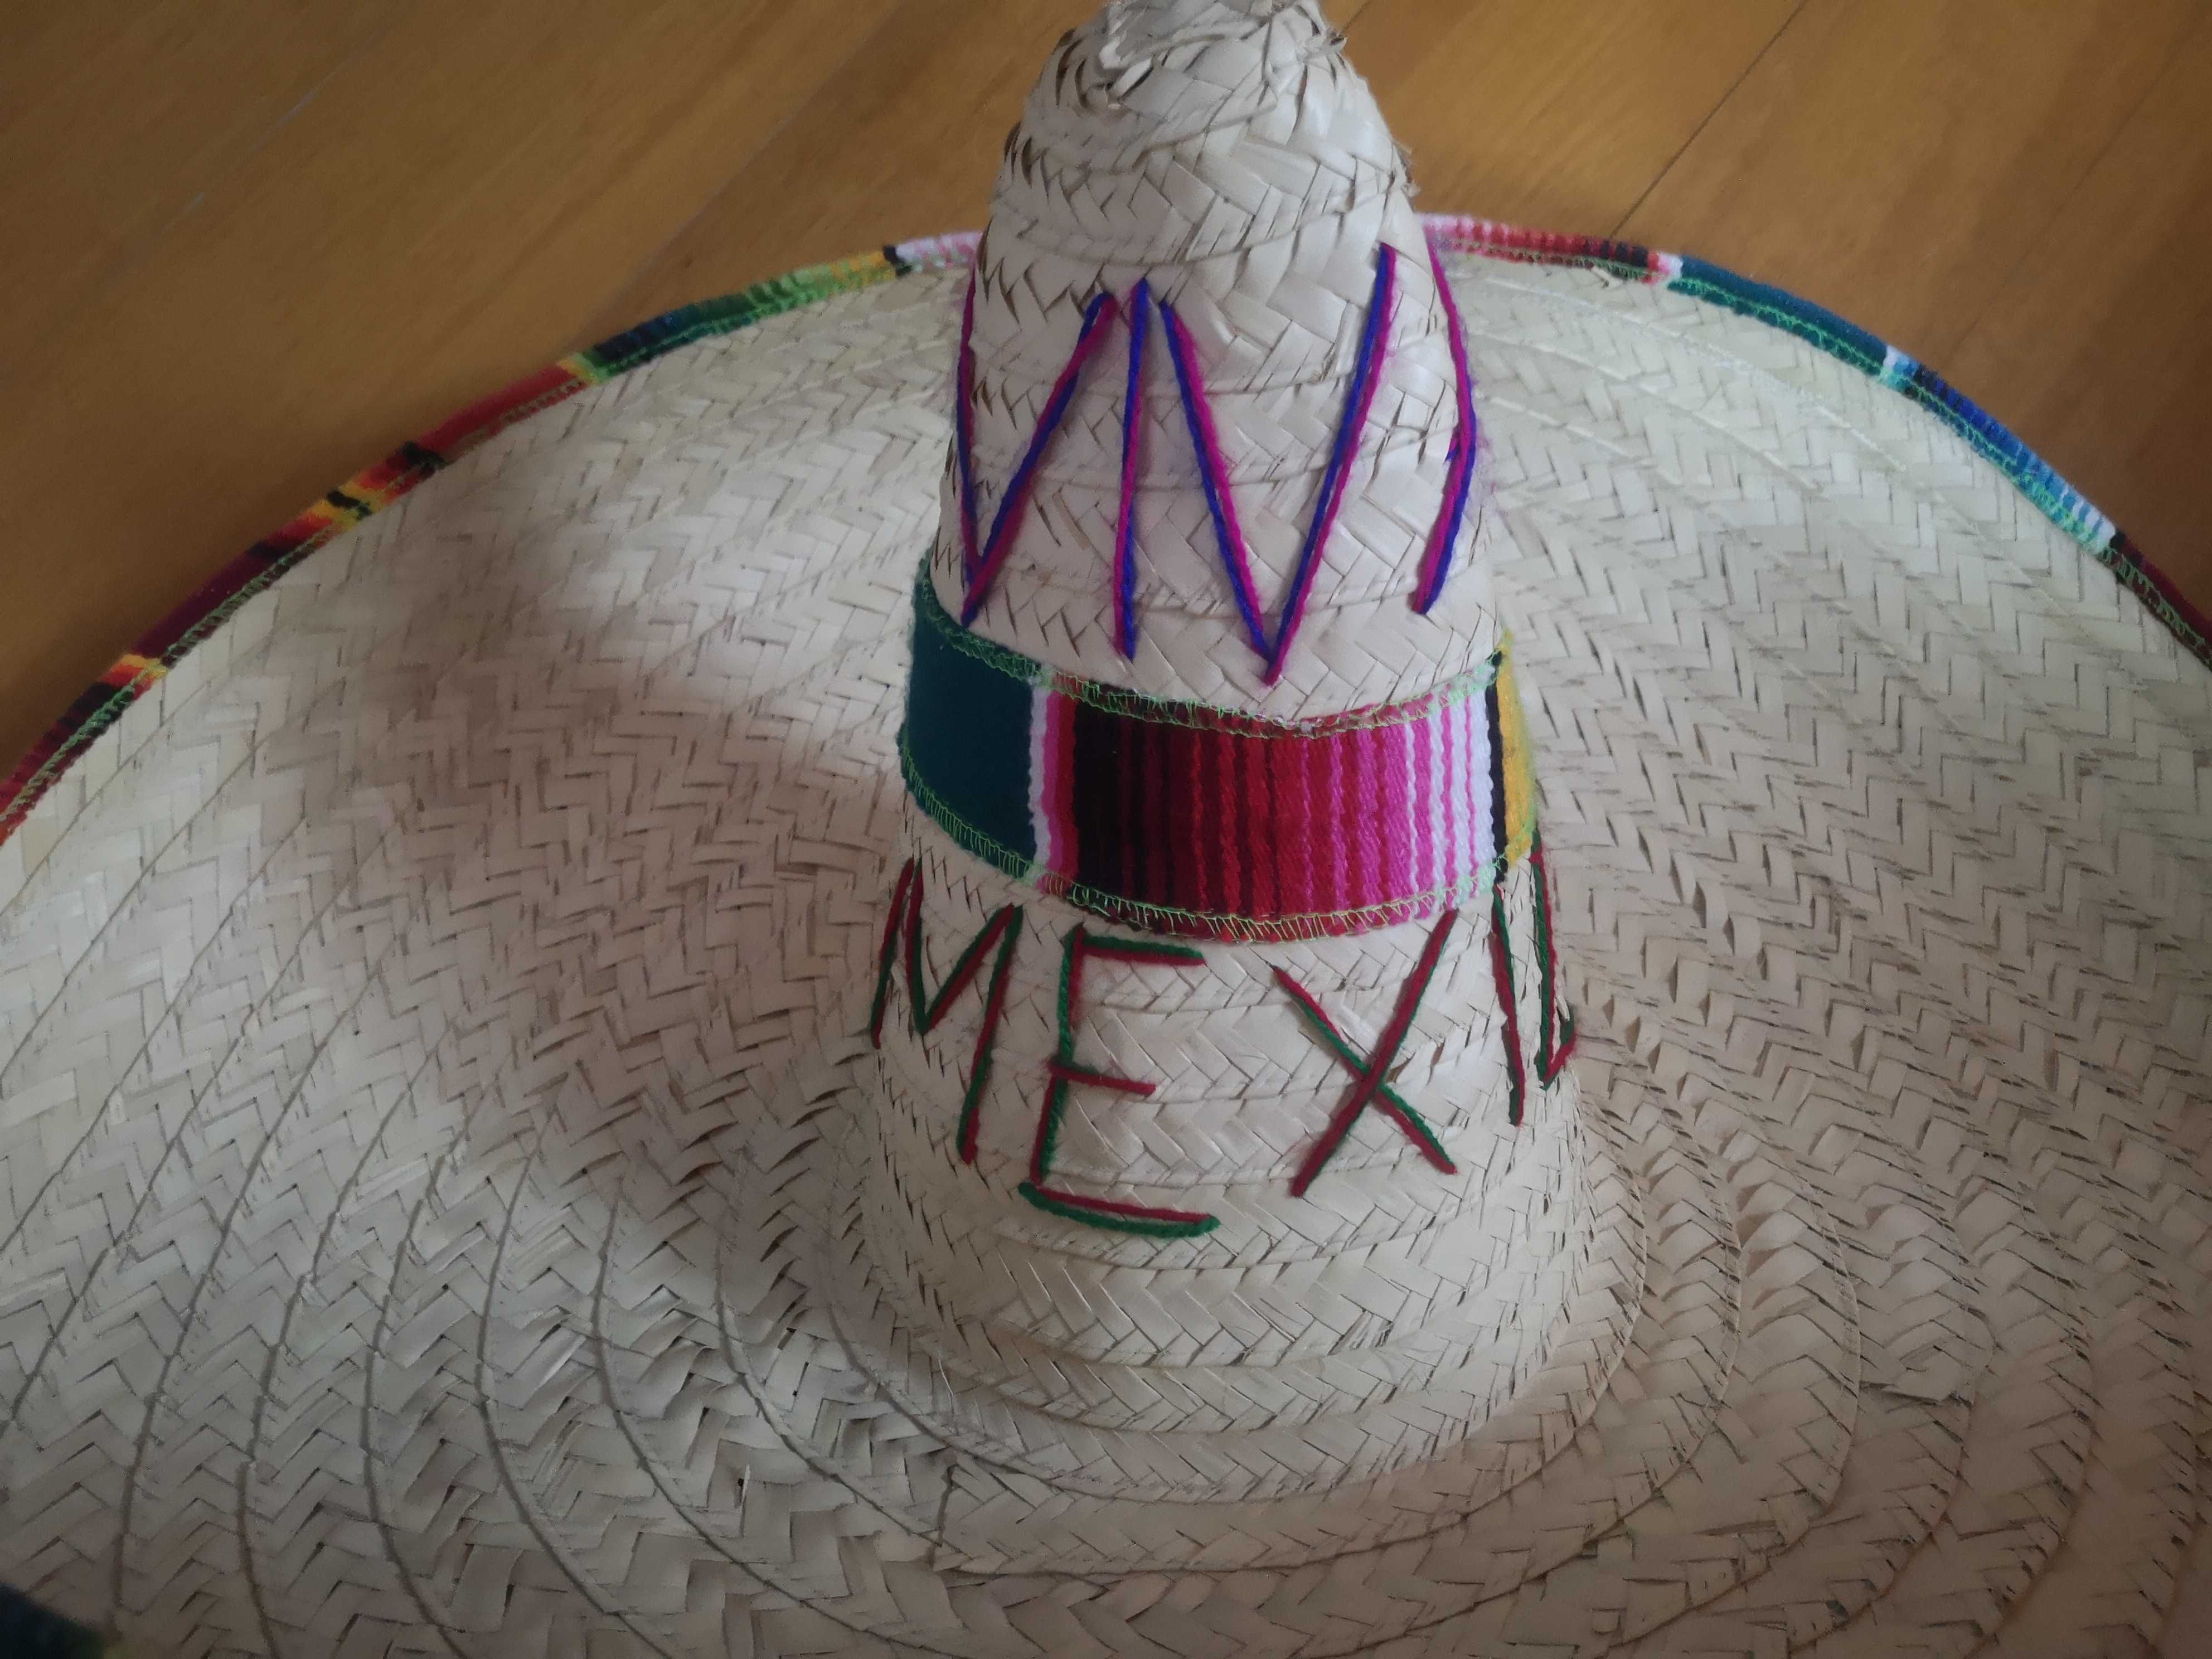 Chapéu Mexicano - "Viva México" - Novo